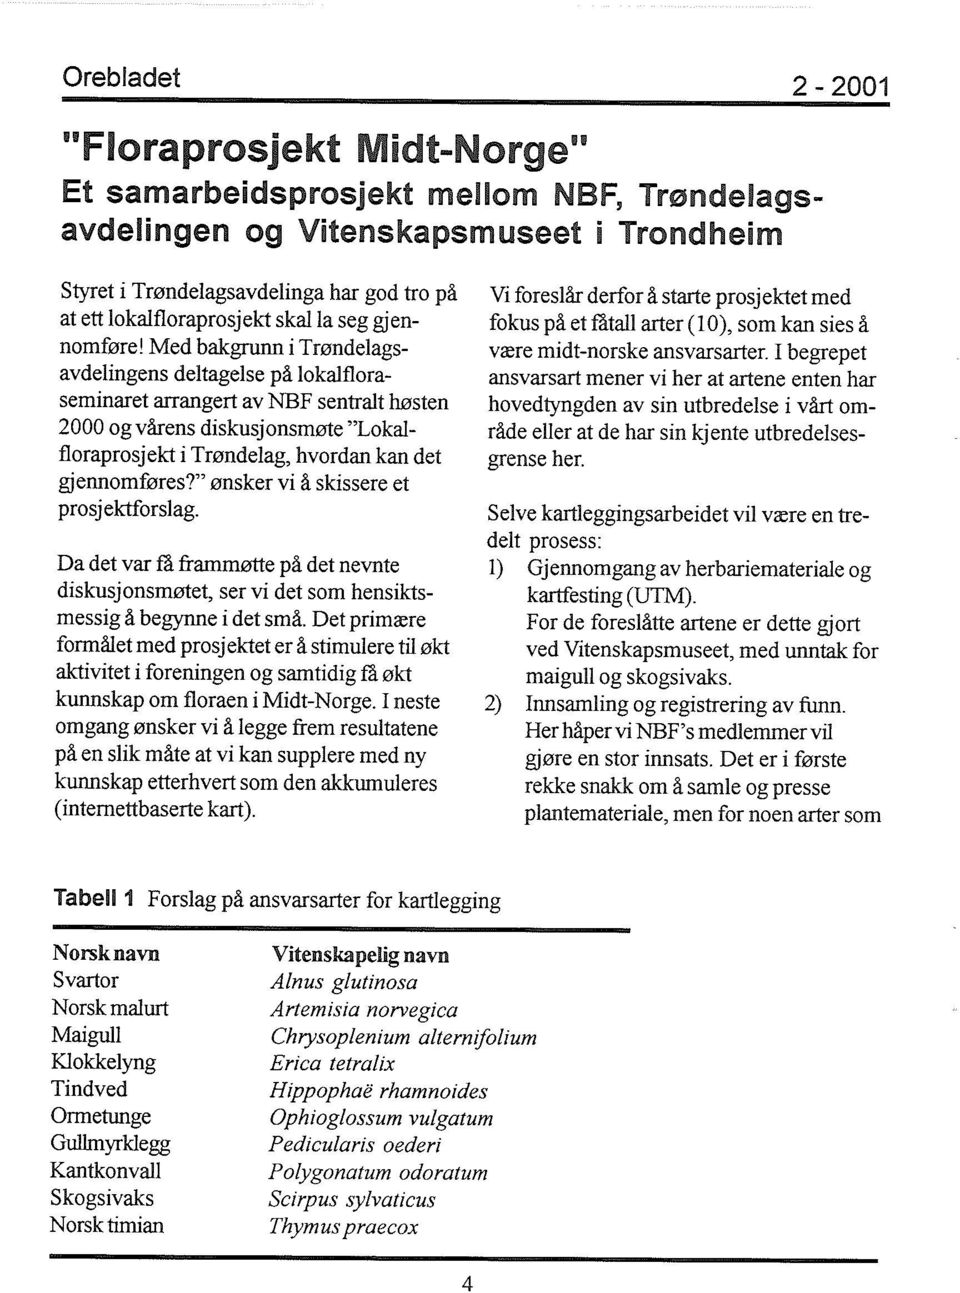 Med bakgrunn i Trøndelagsavdelingens deltagelse på lokalfloraseminaret arrangert av NBF sentralt høsten 2000 og vårens diskusjonsmøte "Lokalfloraprosjekt i Trøndelag, hvordan kan det gjennomføres?